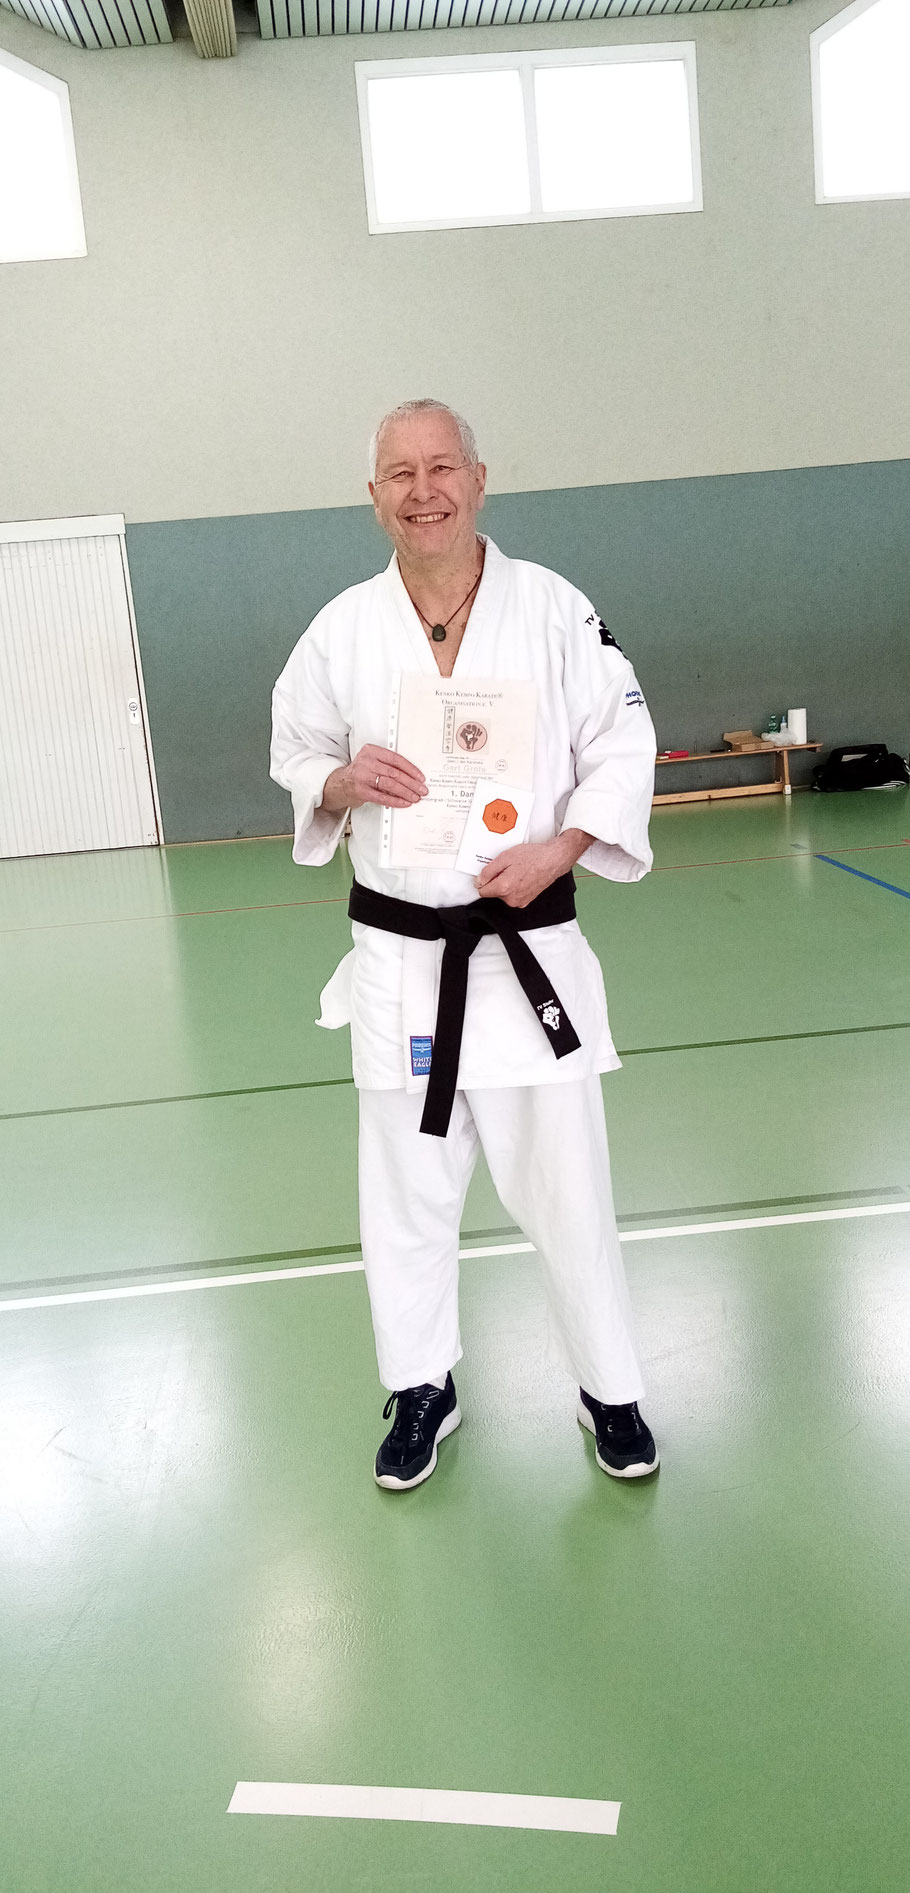 16.3.2023: Gert Grote hat die Prüfung zum 1. Dan Kenko Kempo Karate bestanden - herzlichen Glückwunsch!